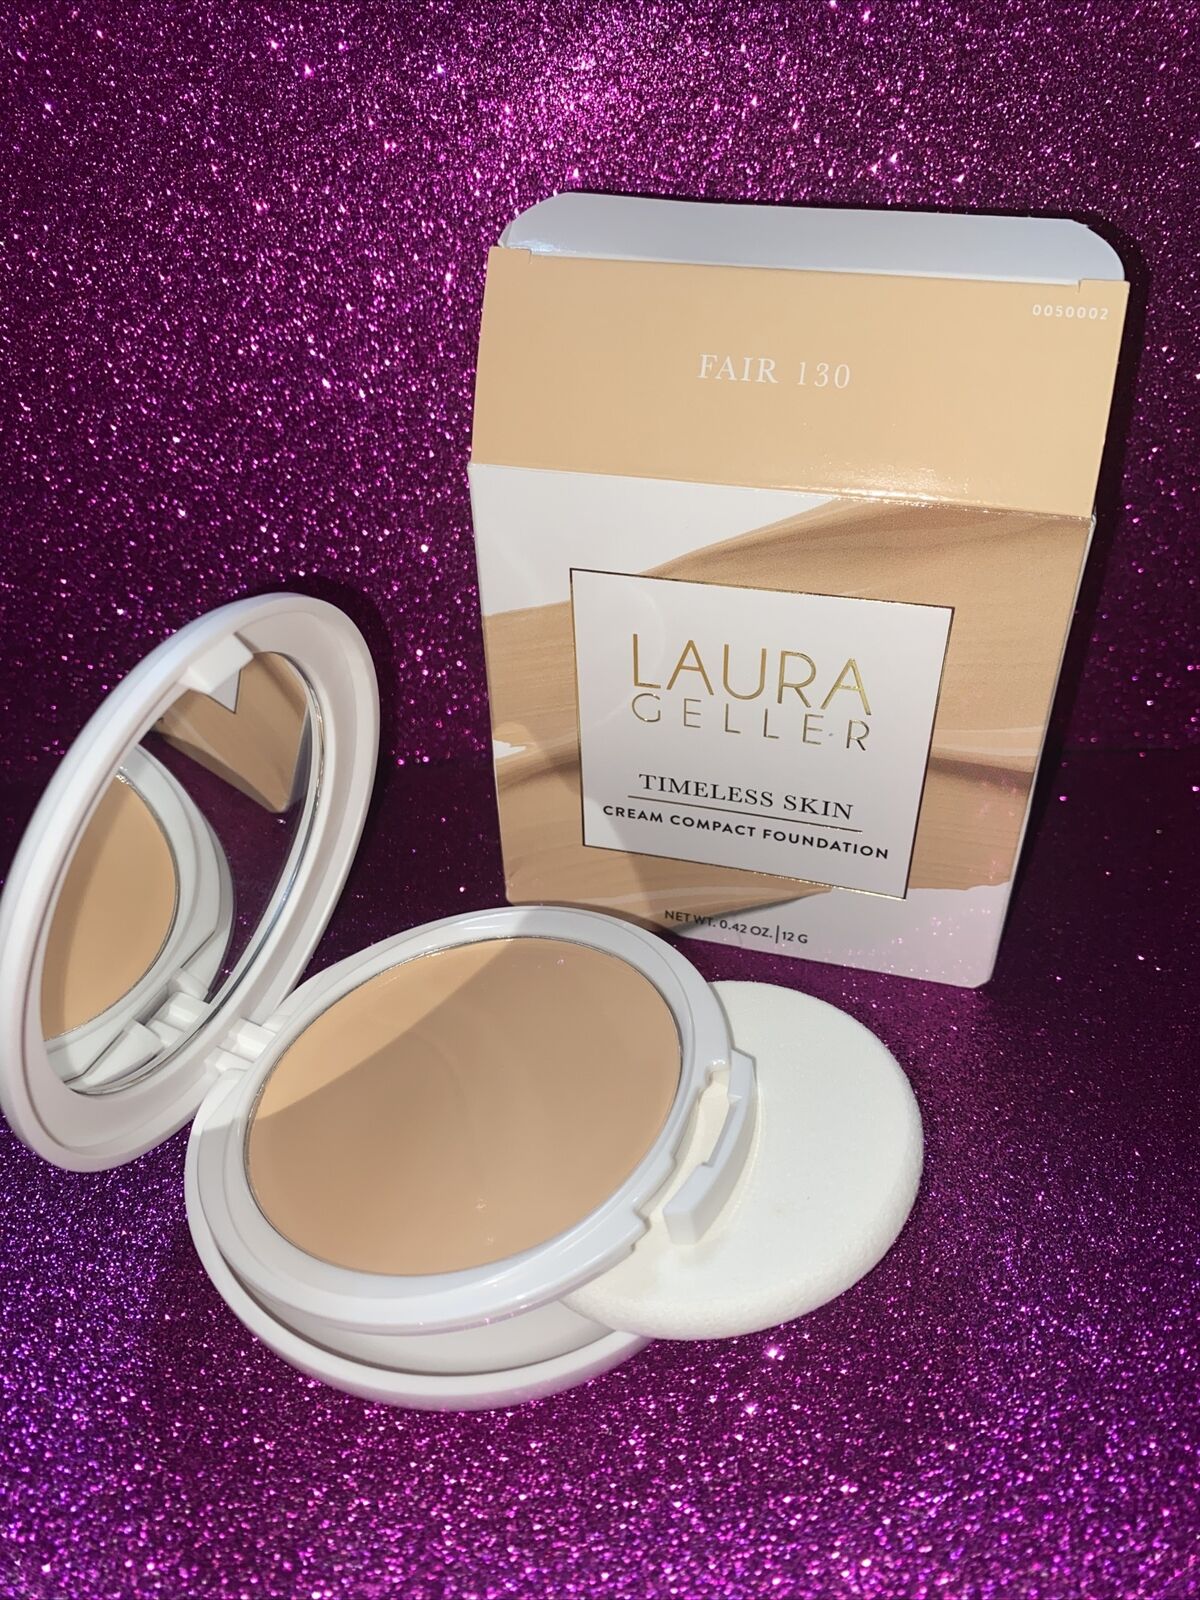 Laura Geller Timeless Skin Cream Compact Foundation 0&period;42 oz &lpar;12 g&rpar; - FAIR 130